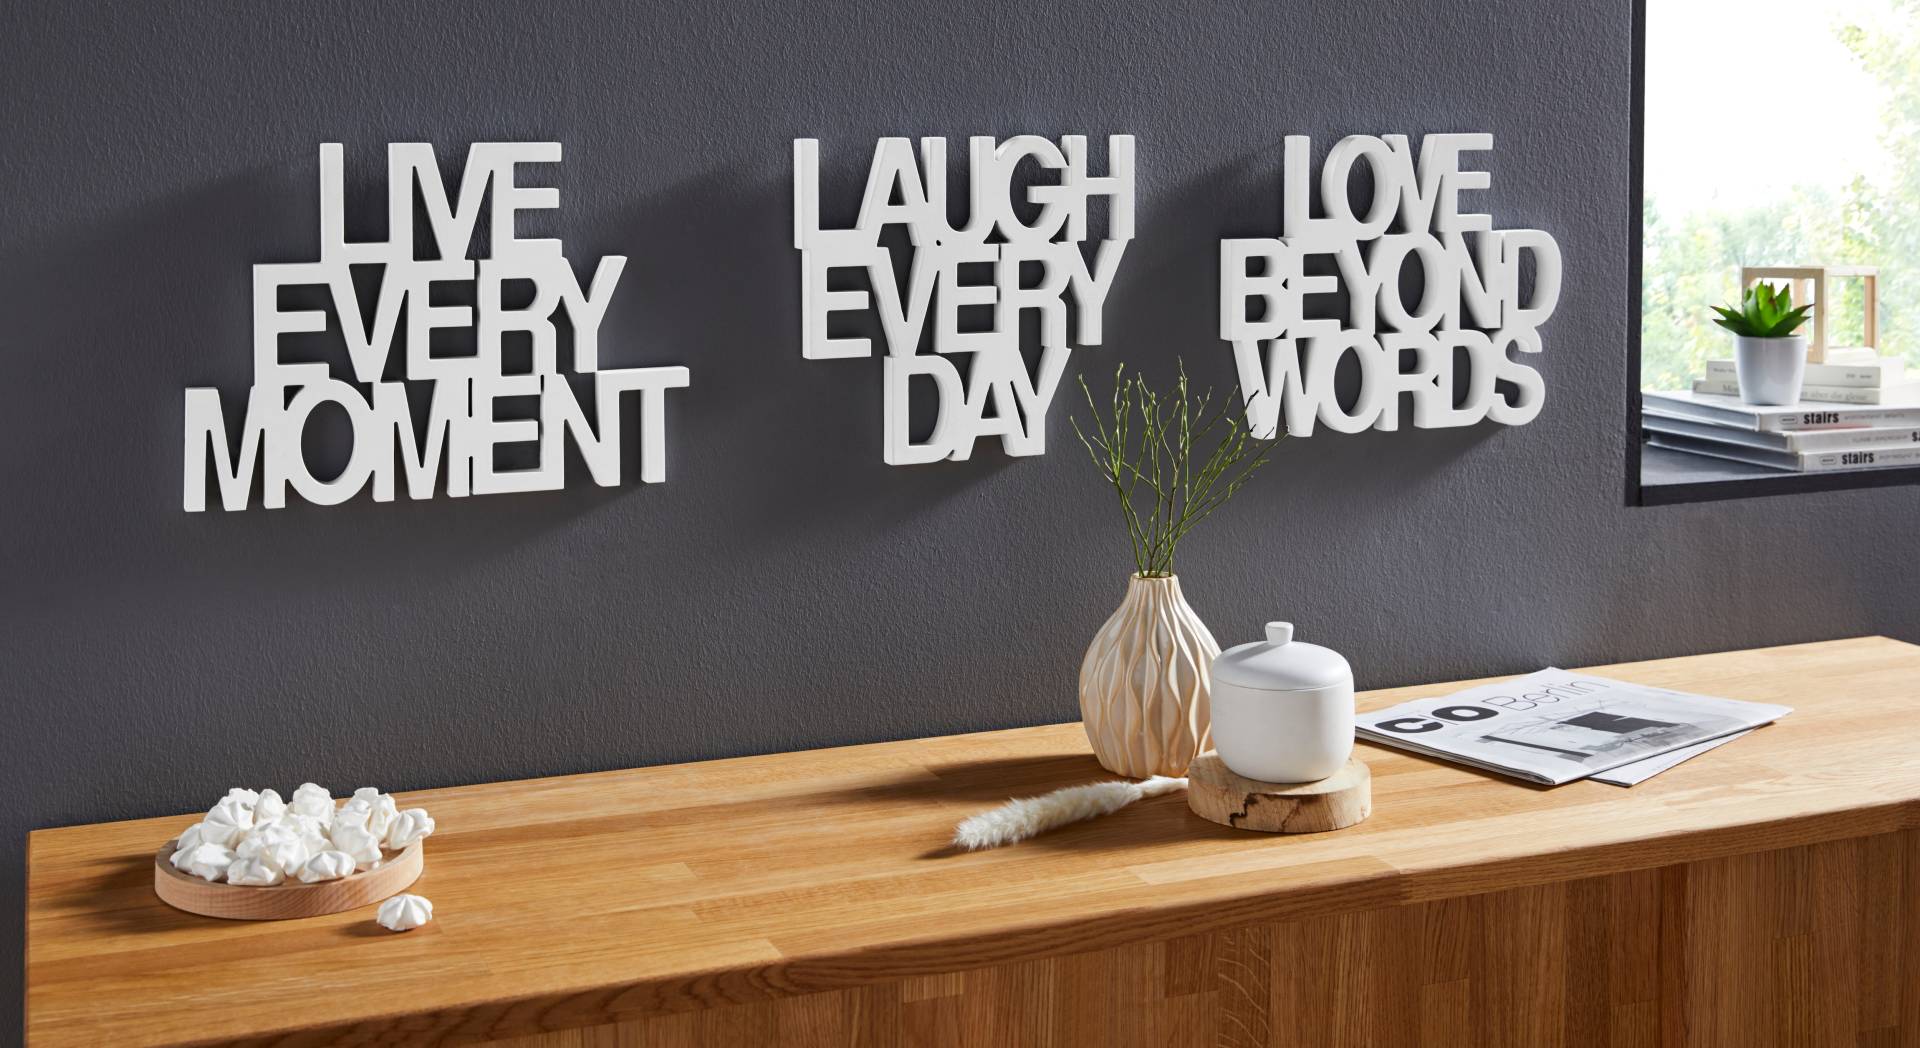 andas Wanddekoobjekt »Schriftzug Live every Moment - Love beyond Words - Laugh every Day« von andas